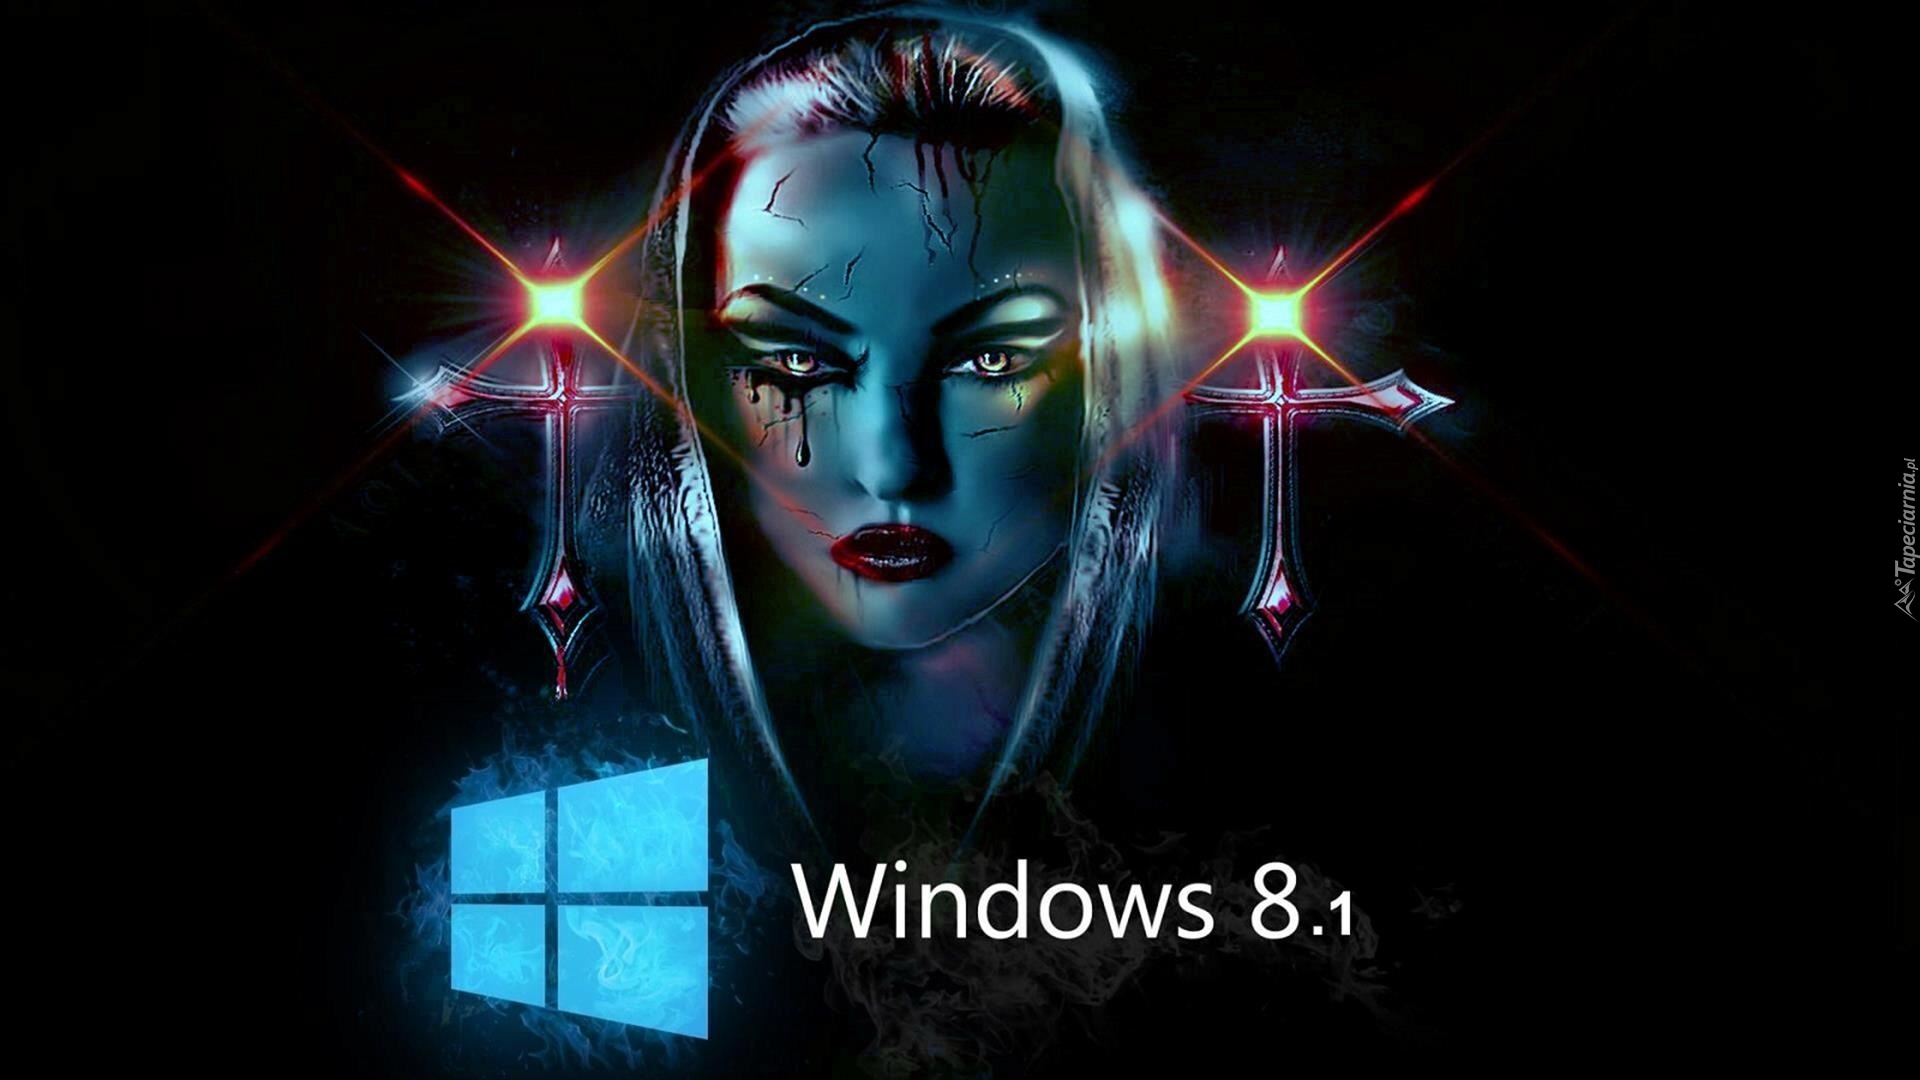 Windows 8, Twarz, Kobiety